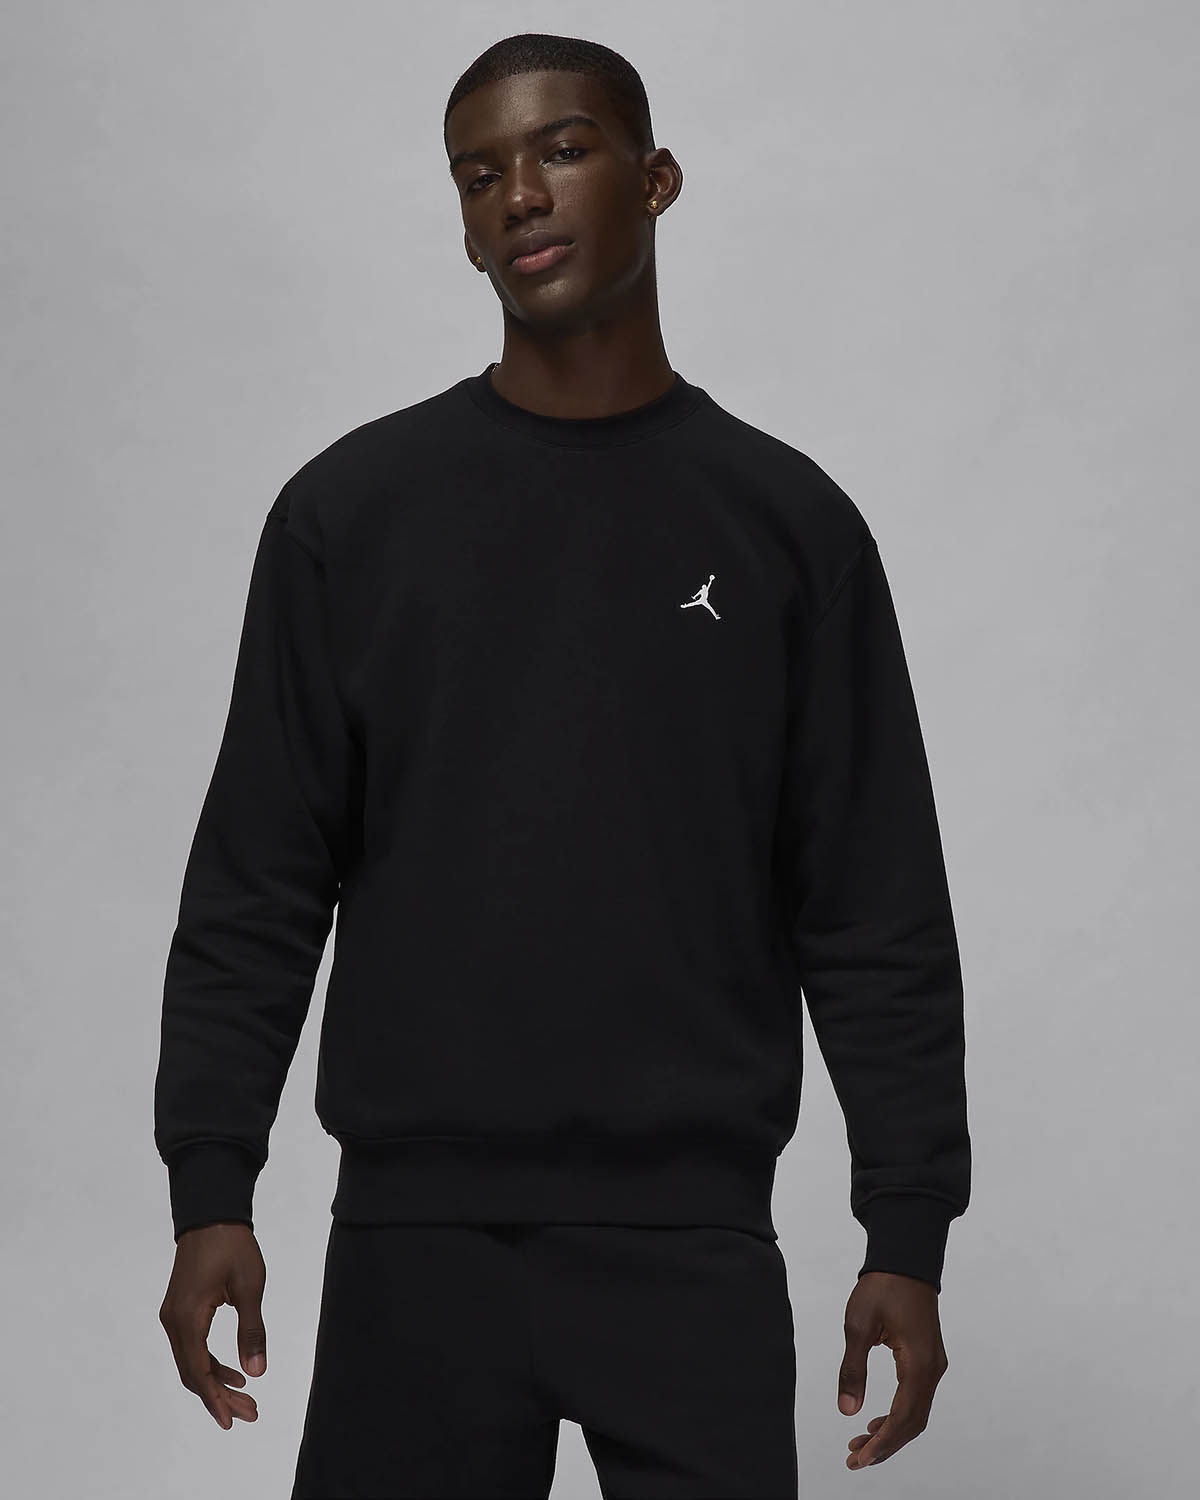 Jordan Brooklyn Fleece Crew Neck Sweatshirt Mens Black